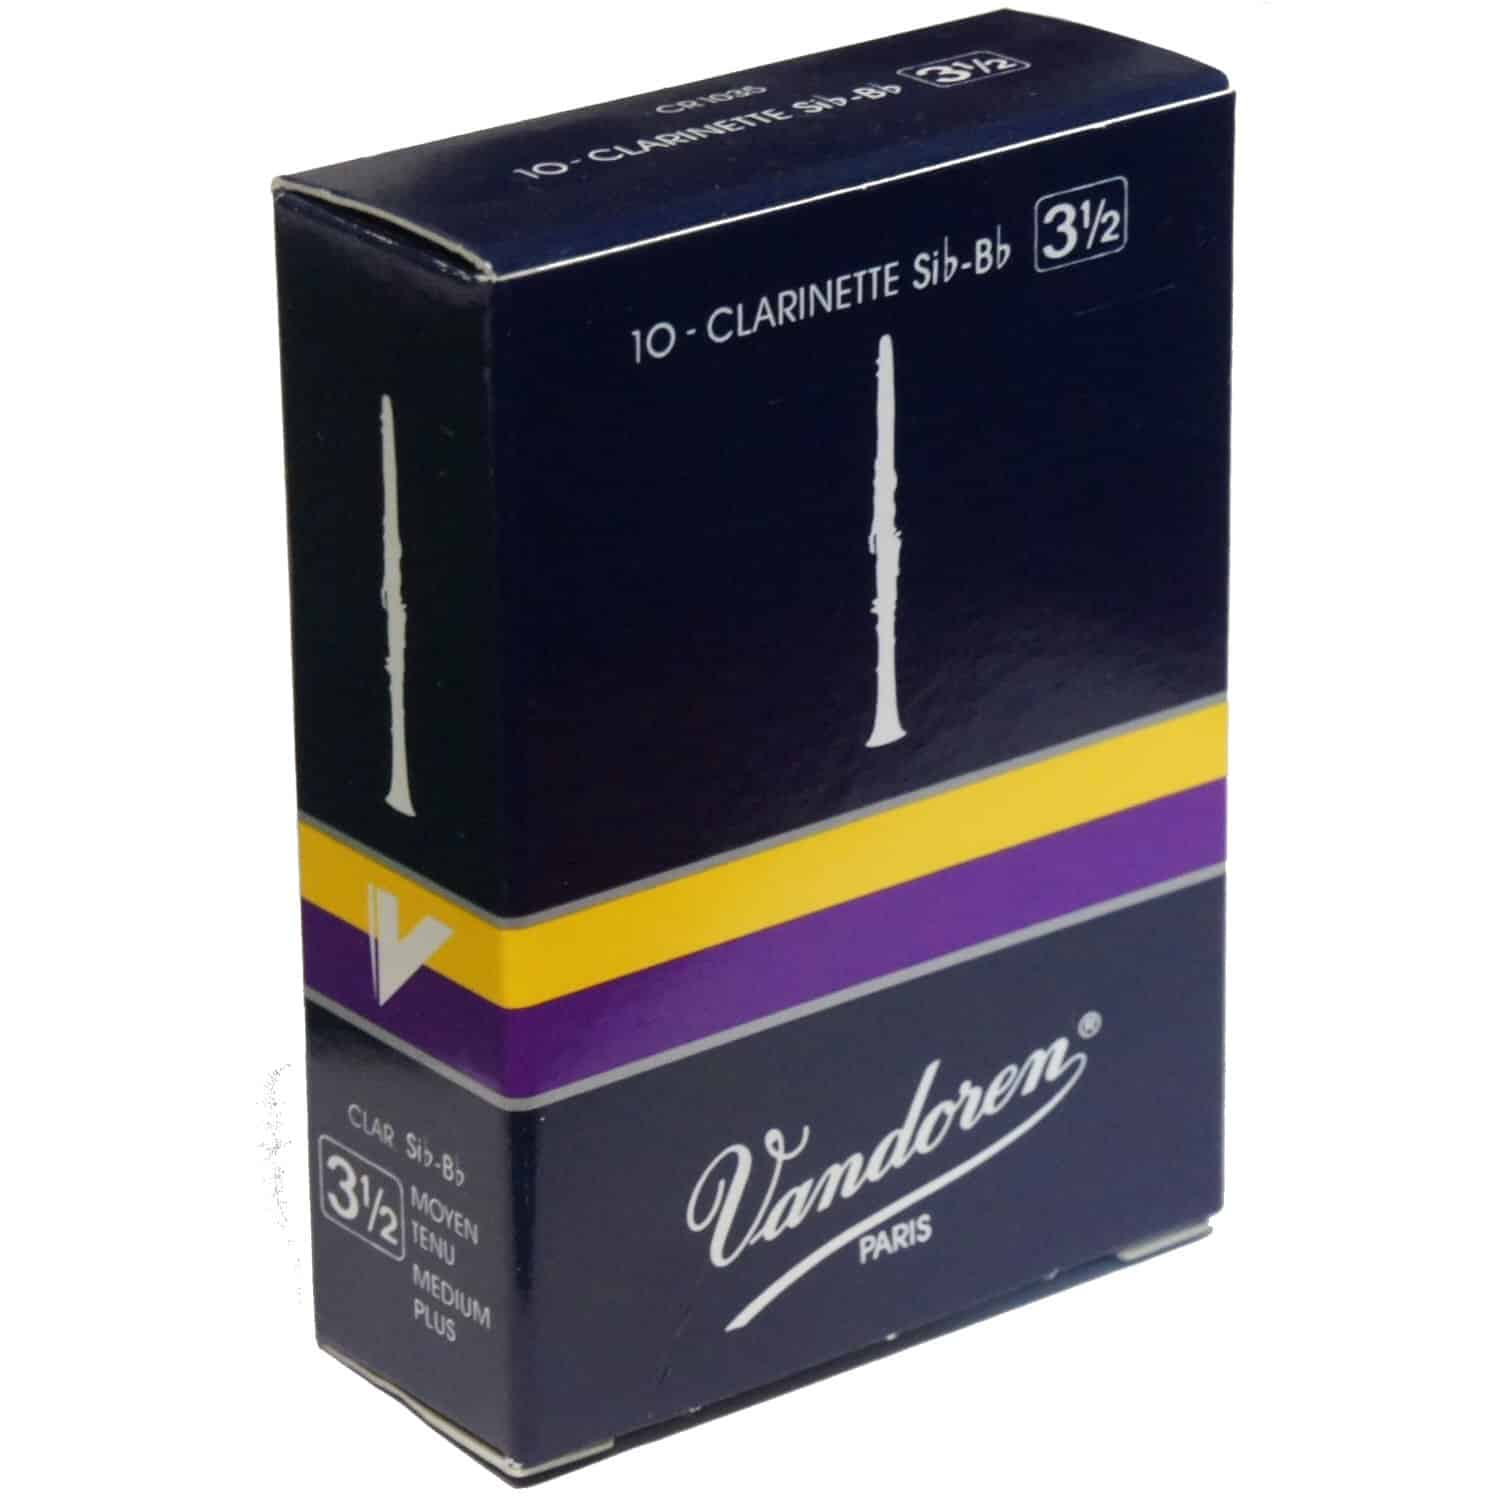 Vandoren clarinet reed strength 3.5 box of 10